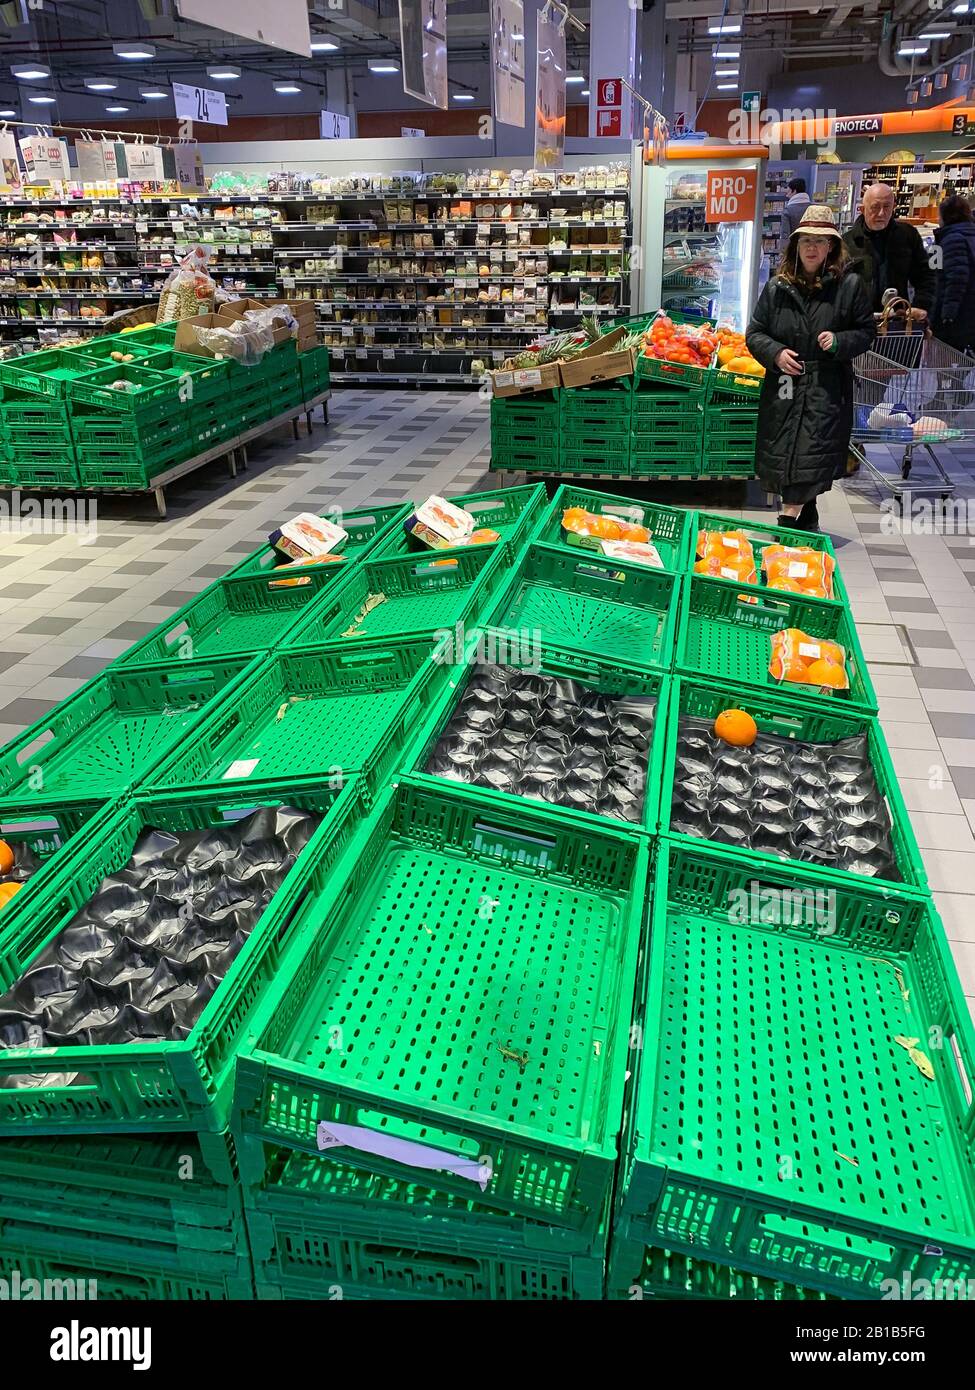 Mantova, Italien - 2020 24. februar: Leere Obst- und Gemüsetrassen in einem Supermarkt in der Lombardei während der Coronavirus Epidemie Stockfoto